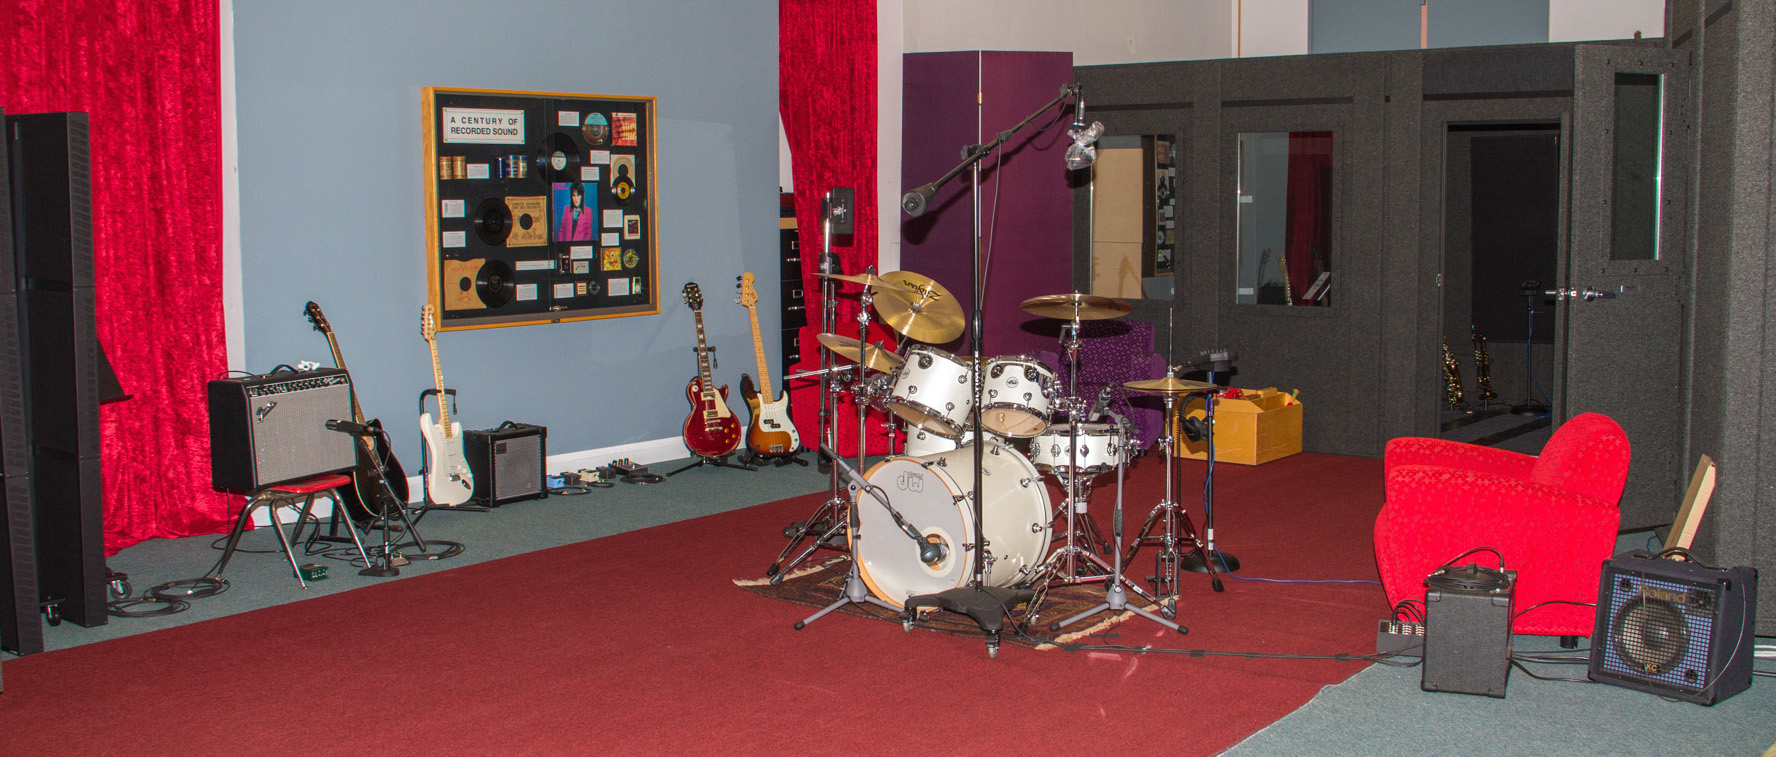 Garden Street Academy Recording Studio Main Room